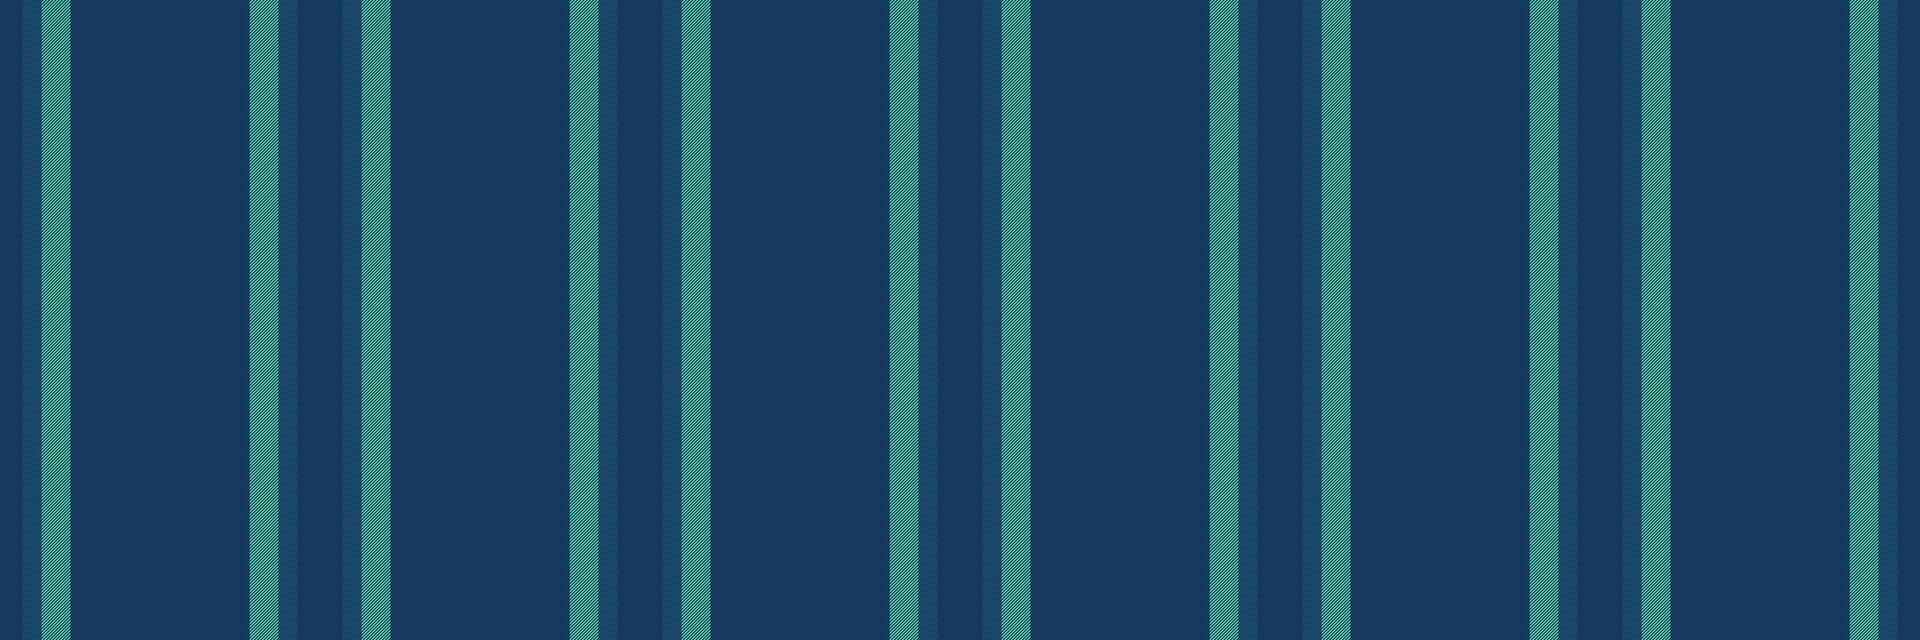 rijk achtergrond lijnen, vervaardiging patroon naadloos textiel. handel streep kleding stof structuur verticaal in blauw en munt kleuren. vector